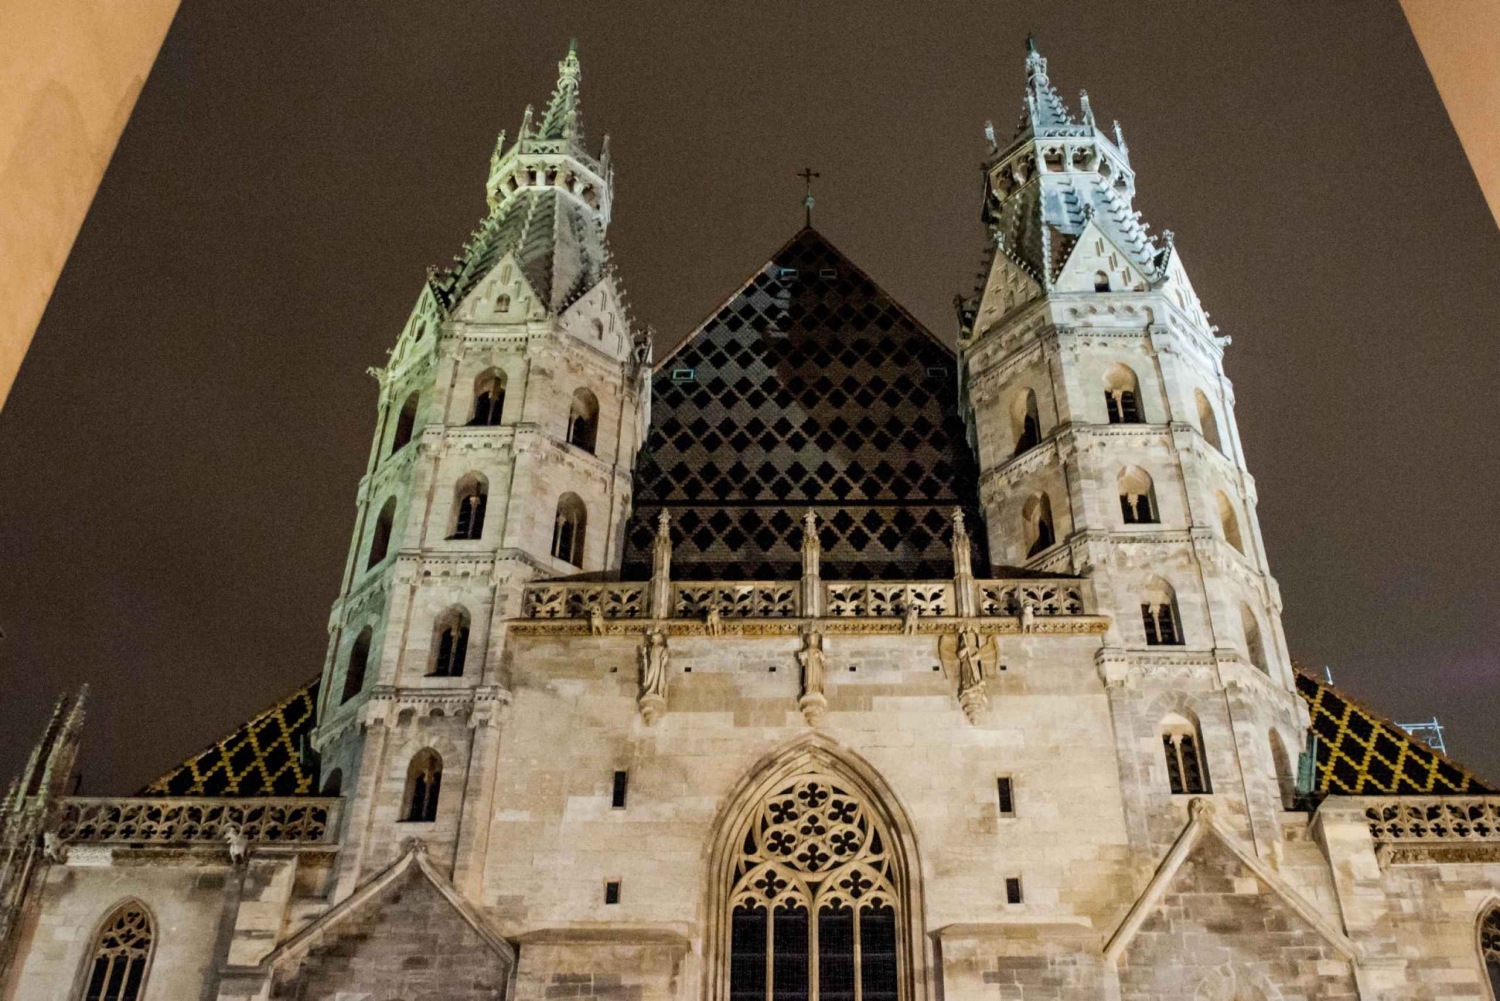 Viena: tour nocturno a pie guiado por fantasmas y leyendas